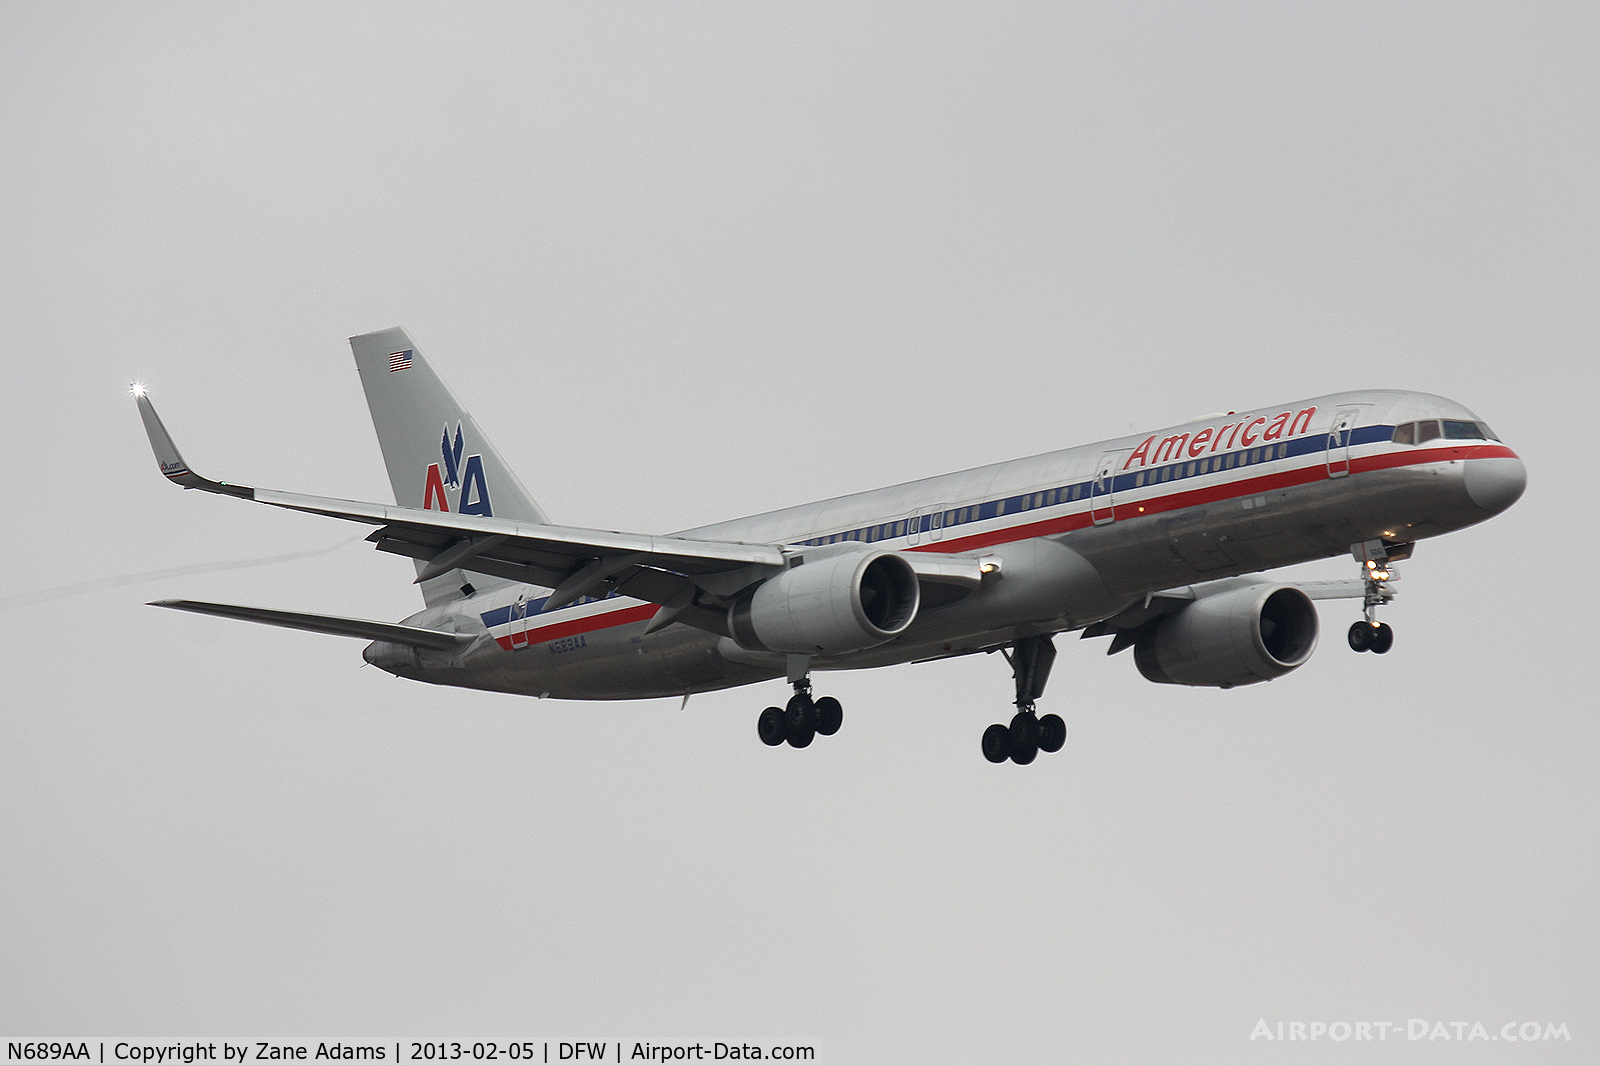 N689AA, 1993 Boeing 757-223 C/N 25731, American Airlines at DFW Airport